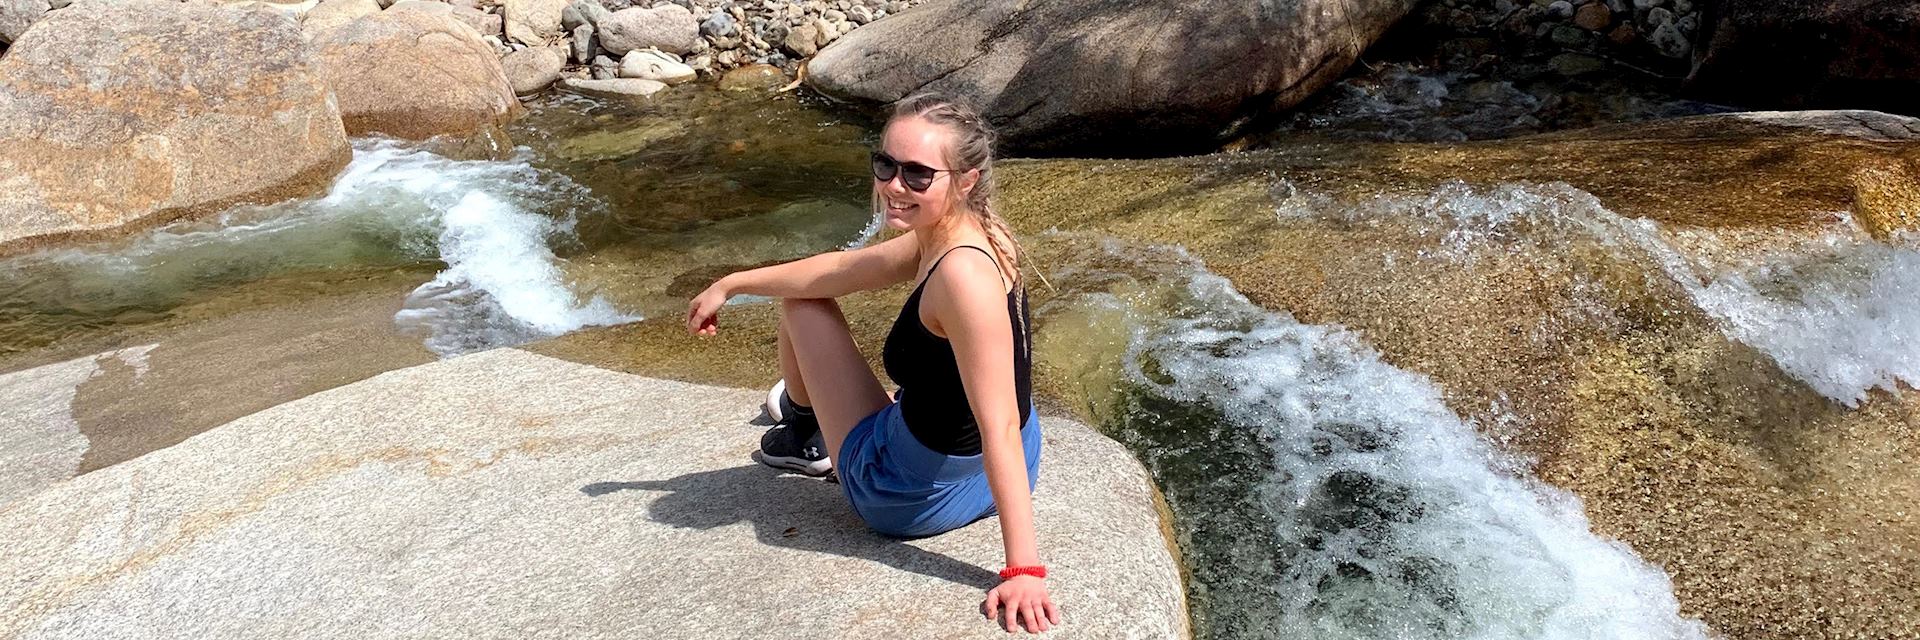 Julia on a hike, USA